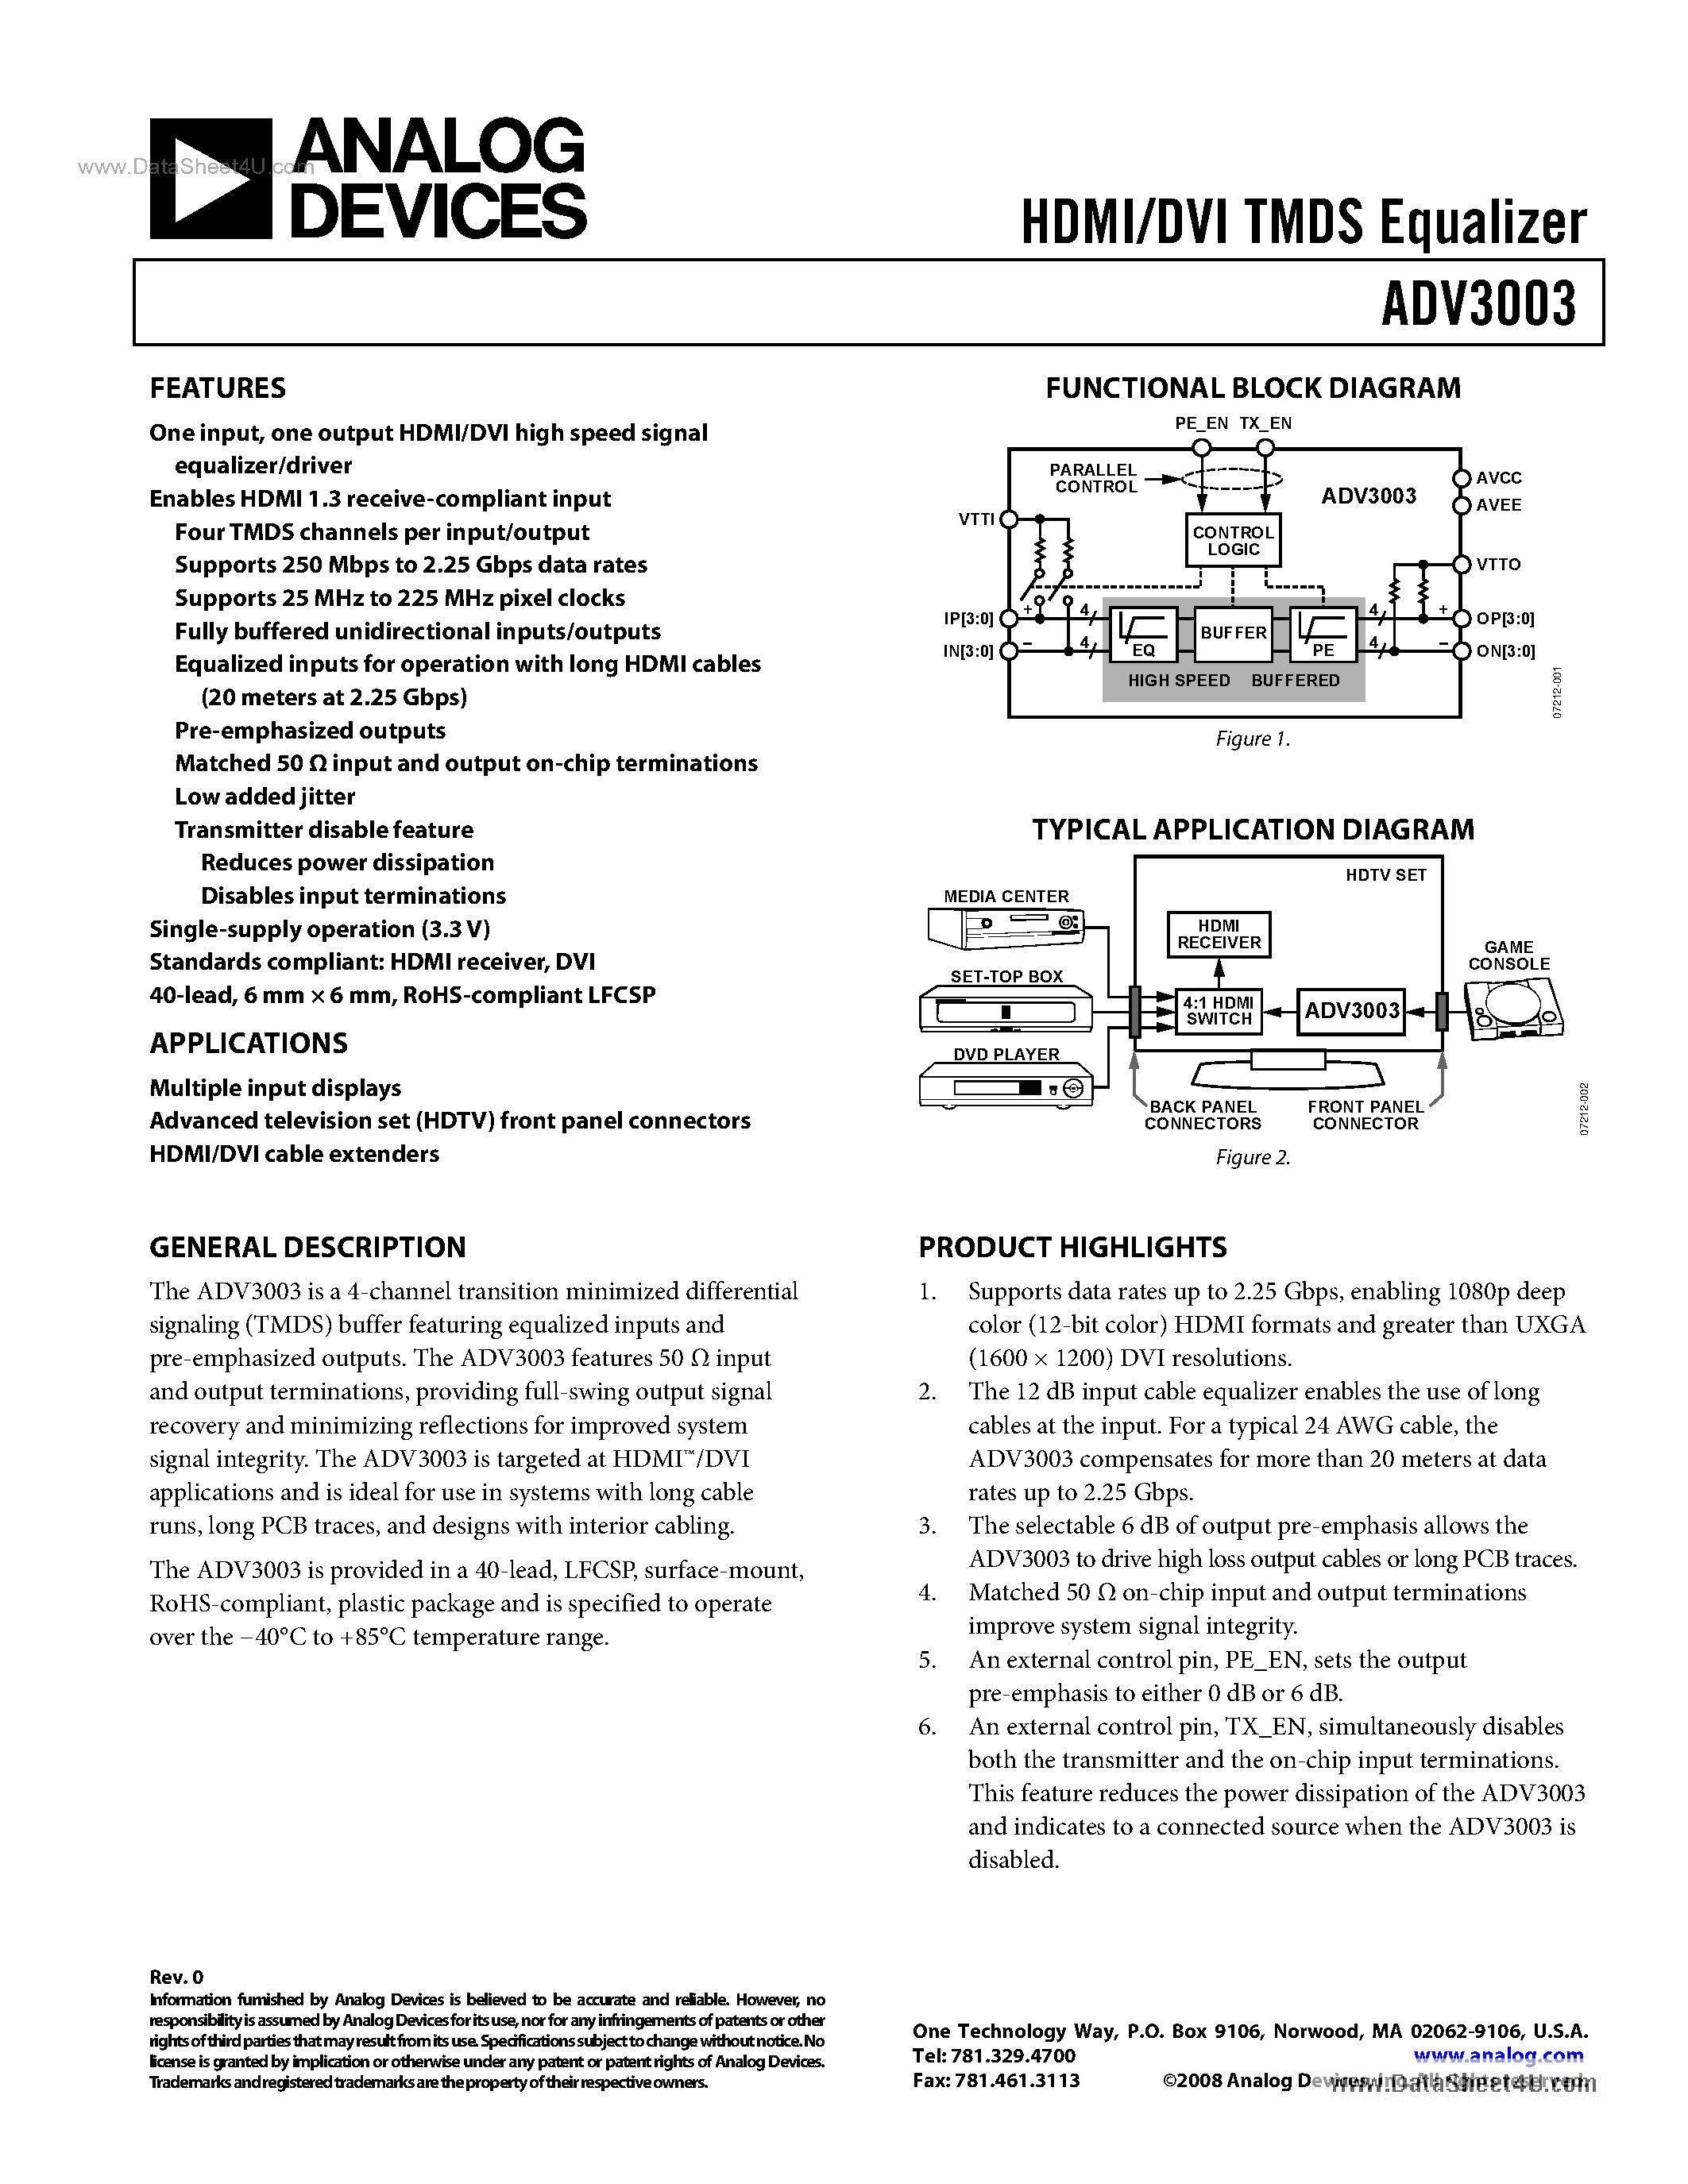 Datasheet ADV3003 - HDMI/DVI TMDS Equalizer page 1